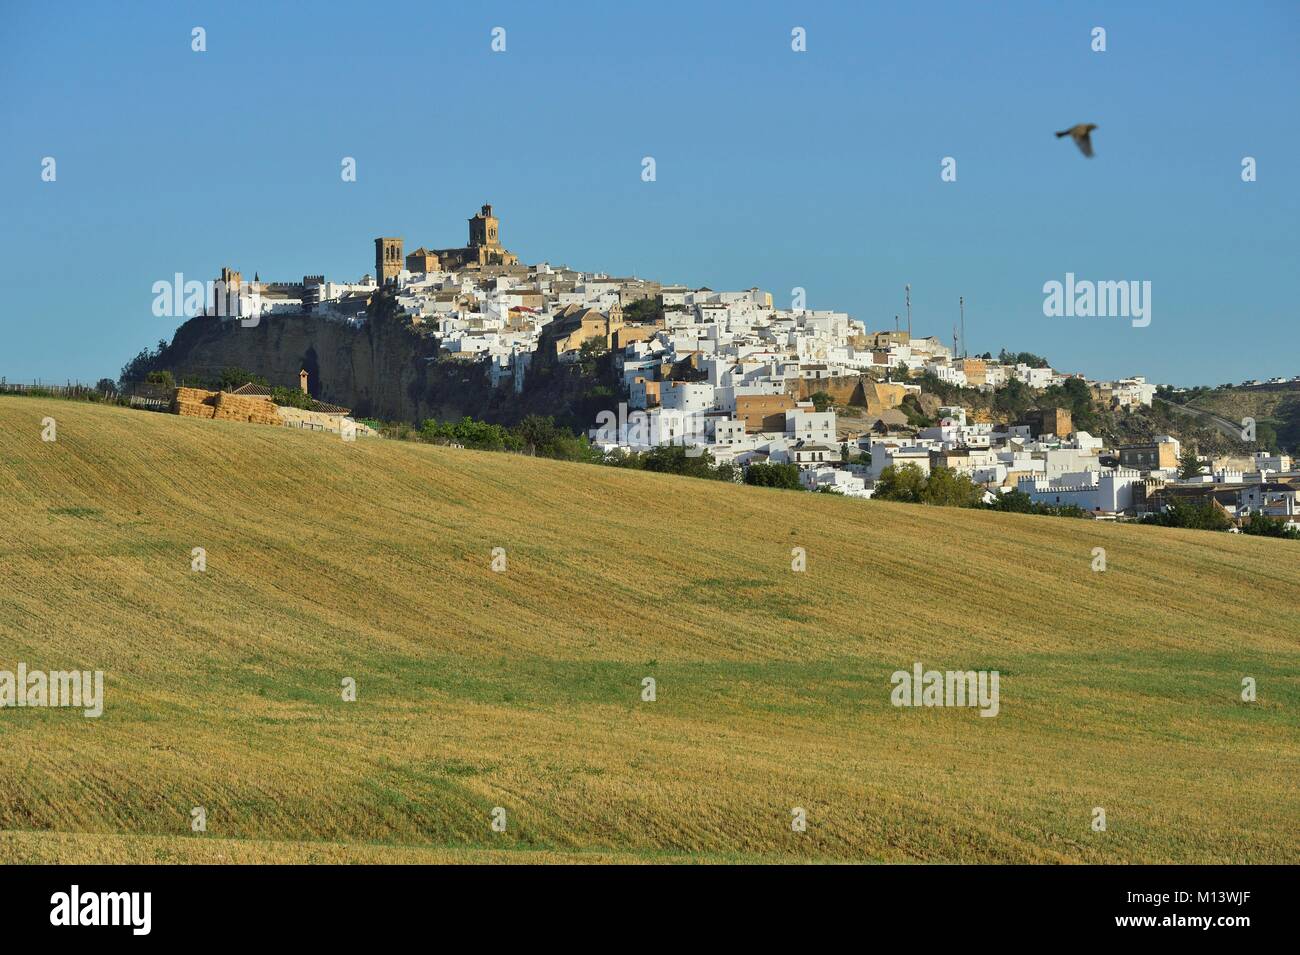 Espagne, Andalousie, village blanc d'Arcos de la Frontera Banque D'Images